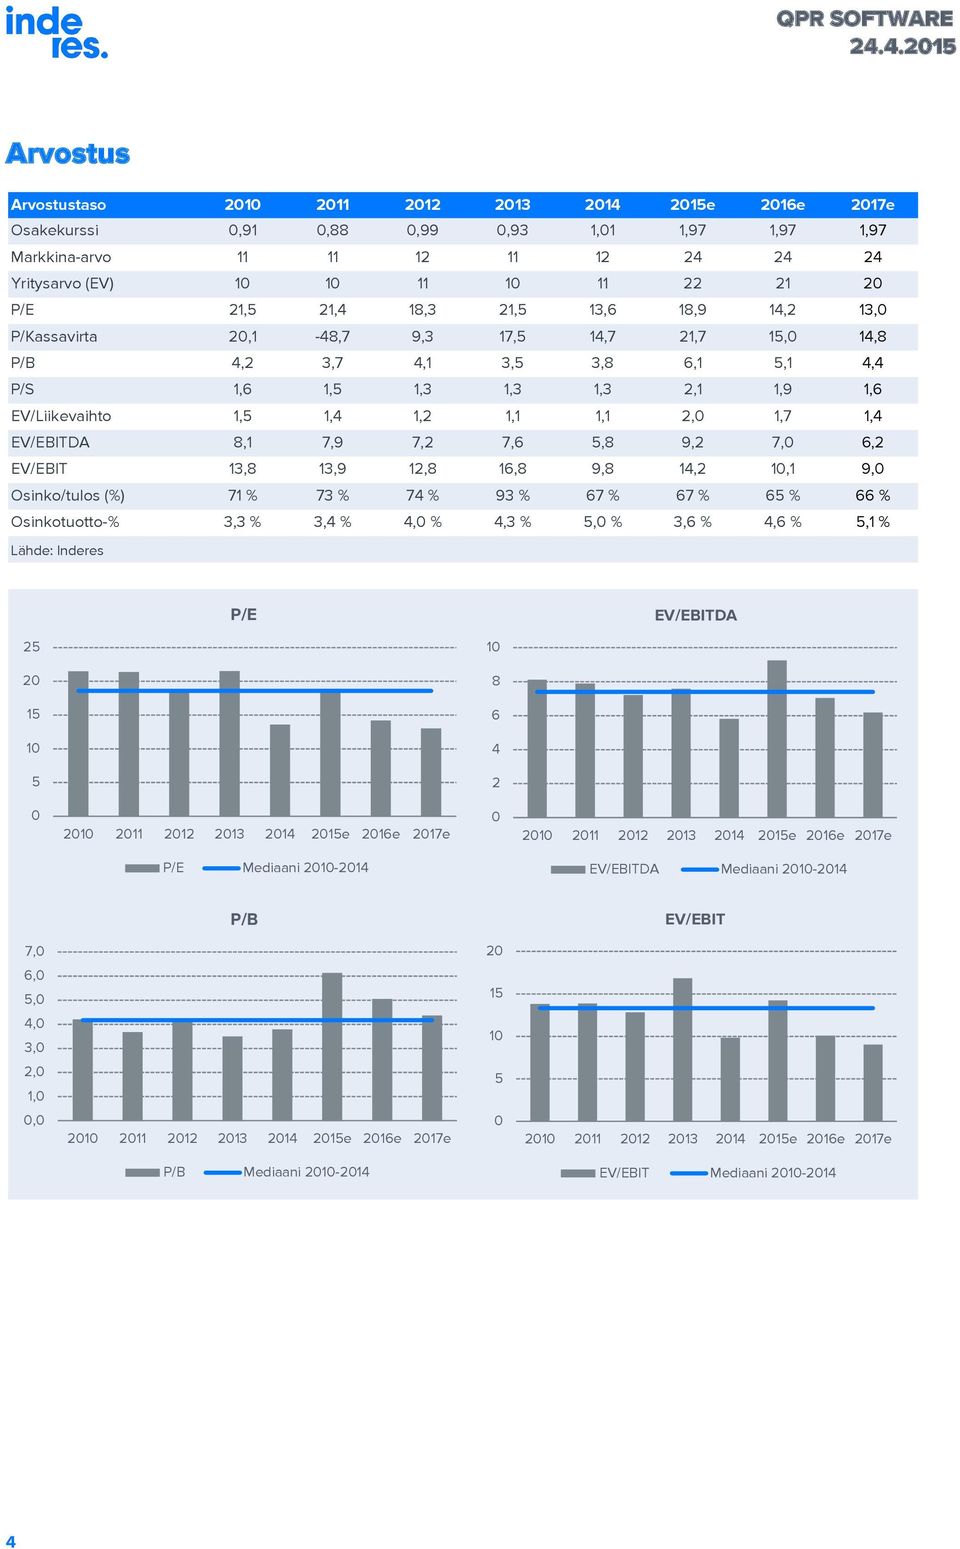 EV/EBITDA 8,1 7,9 7,2 7,6 5,8 9,2 7, 6,2 EV/EBIT 13,8 13,9 12,8 16,8 9,8 14,2 1,1 9, Osinko/tulos (%) 71 % 73 % 74 % 93 % 67 % 67 % 65 % 66 % Osinkotuotto-% 3,3 % 3,4 % 4, % 4,3 % 5, % 3,6 % 4,6 %